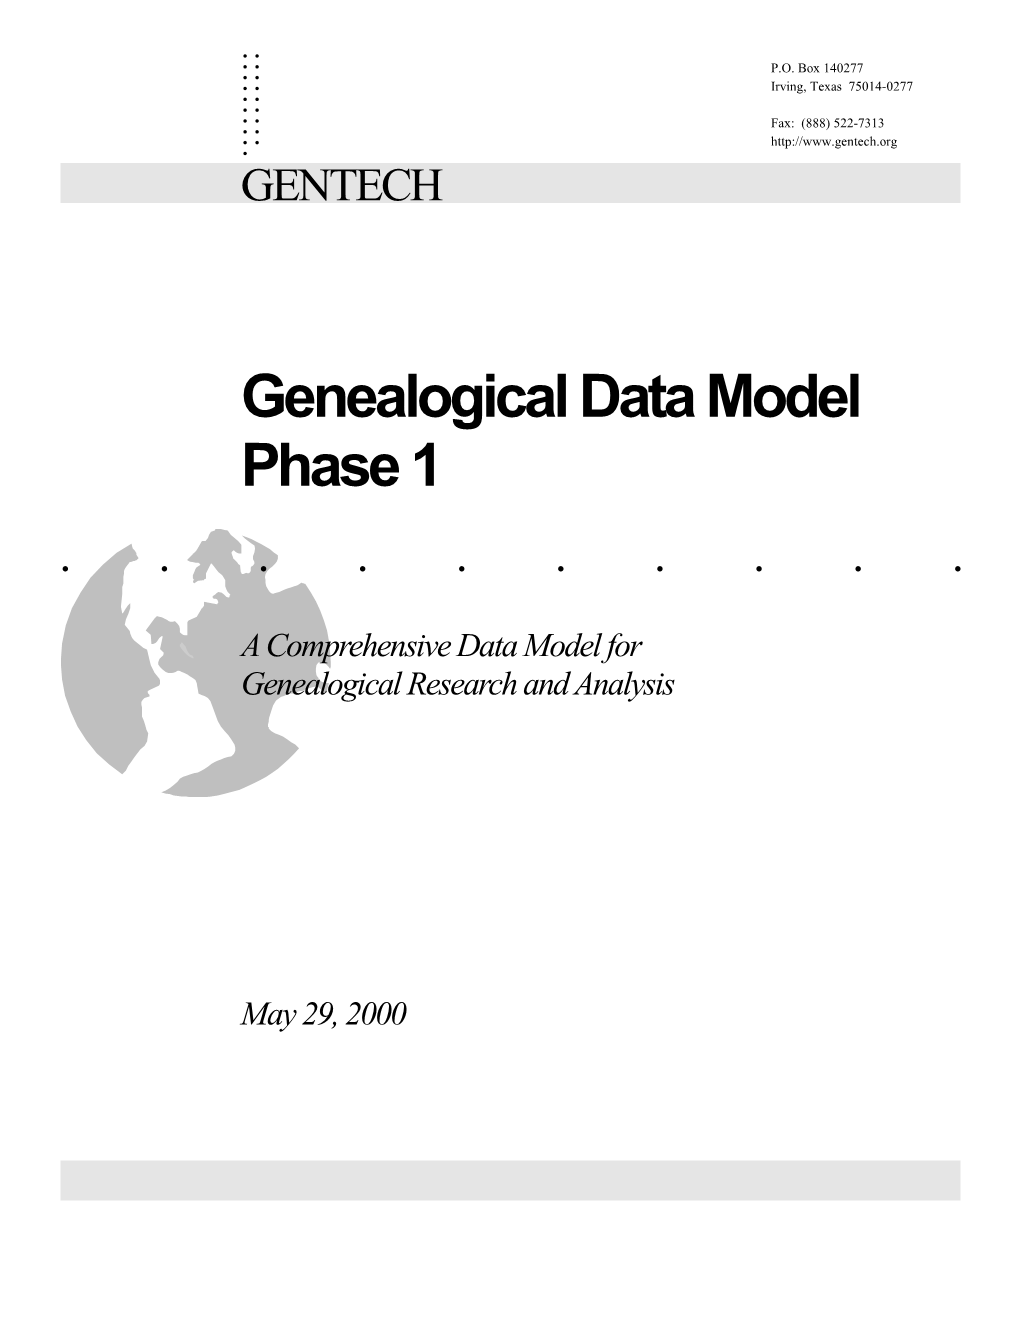 Genealogical Data Model Phase 1